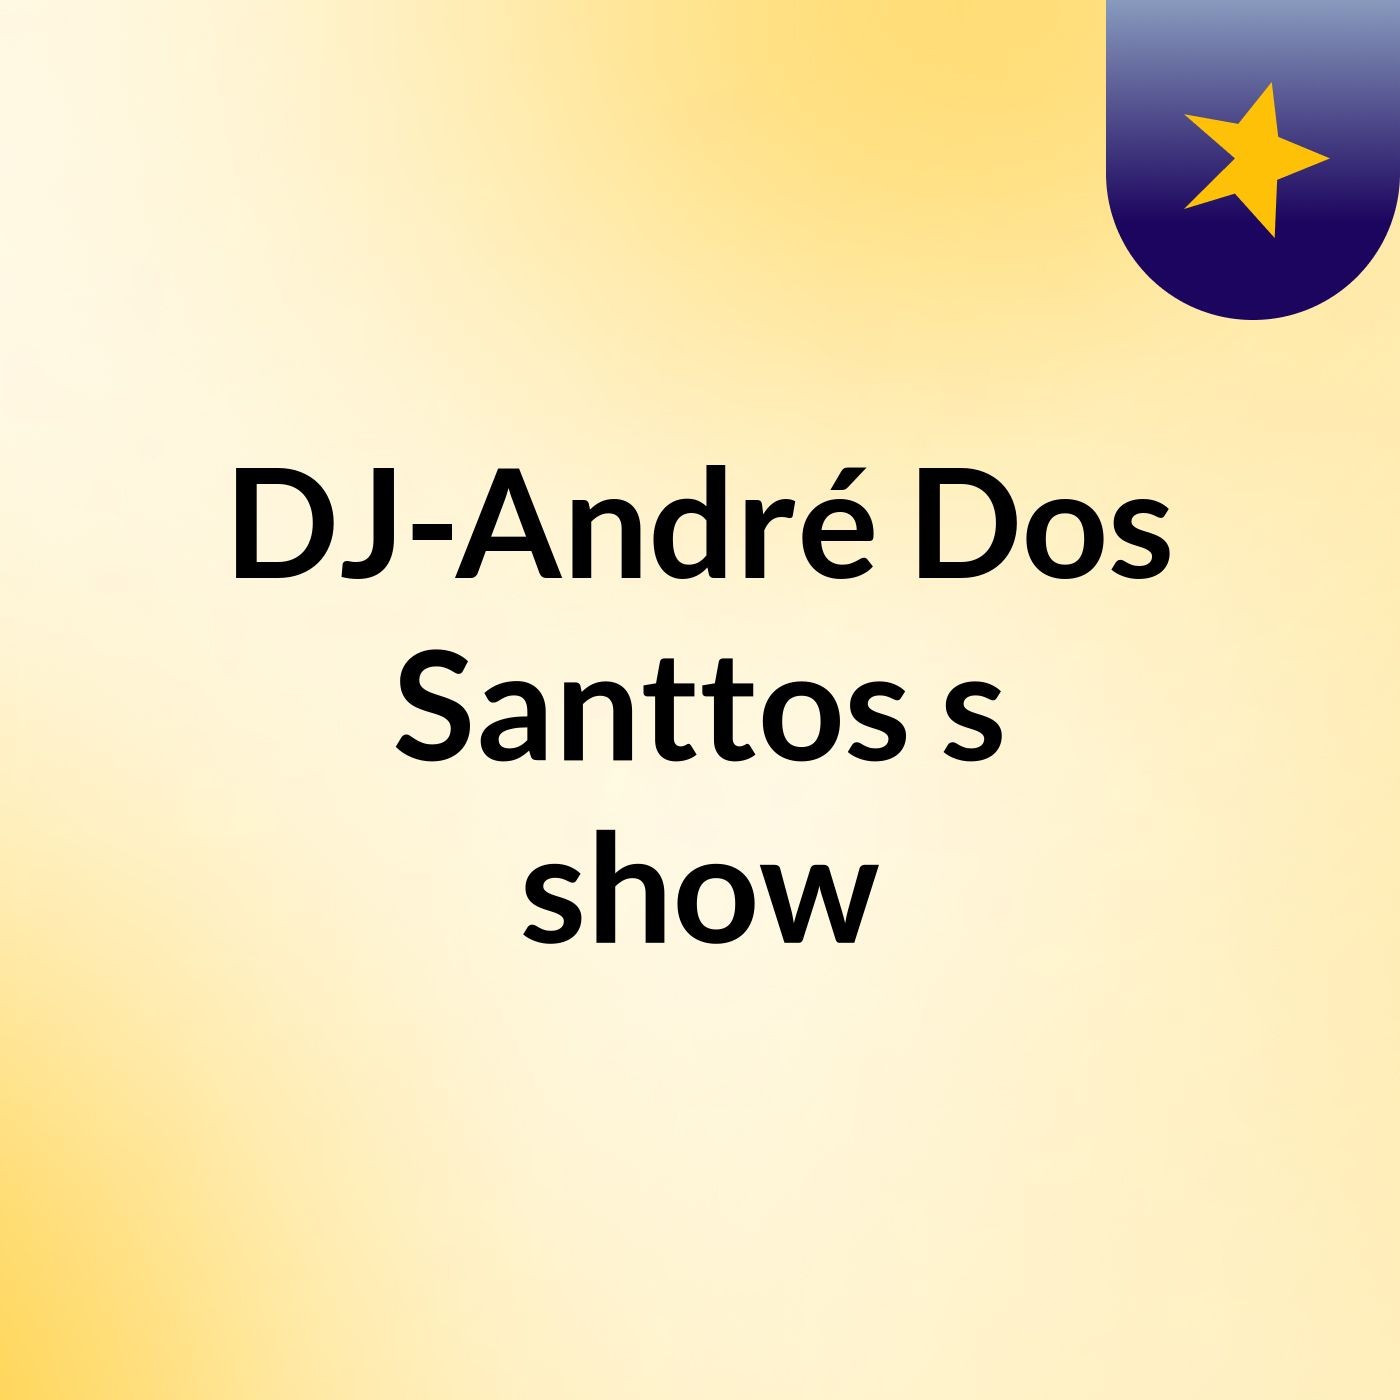 DJ-André Dos Santtos's show